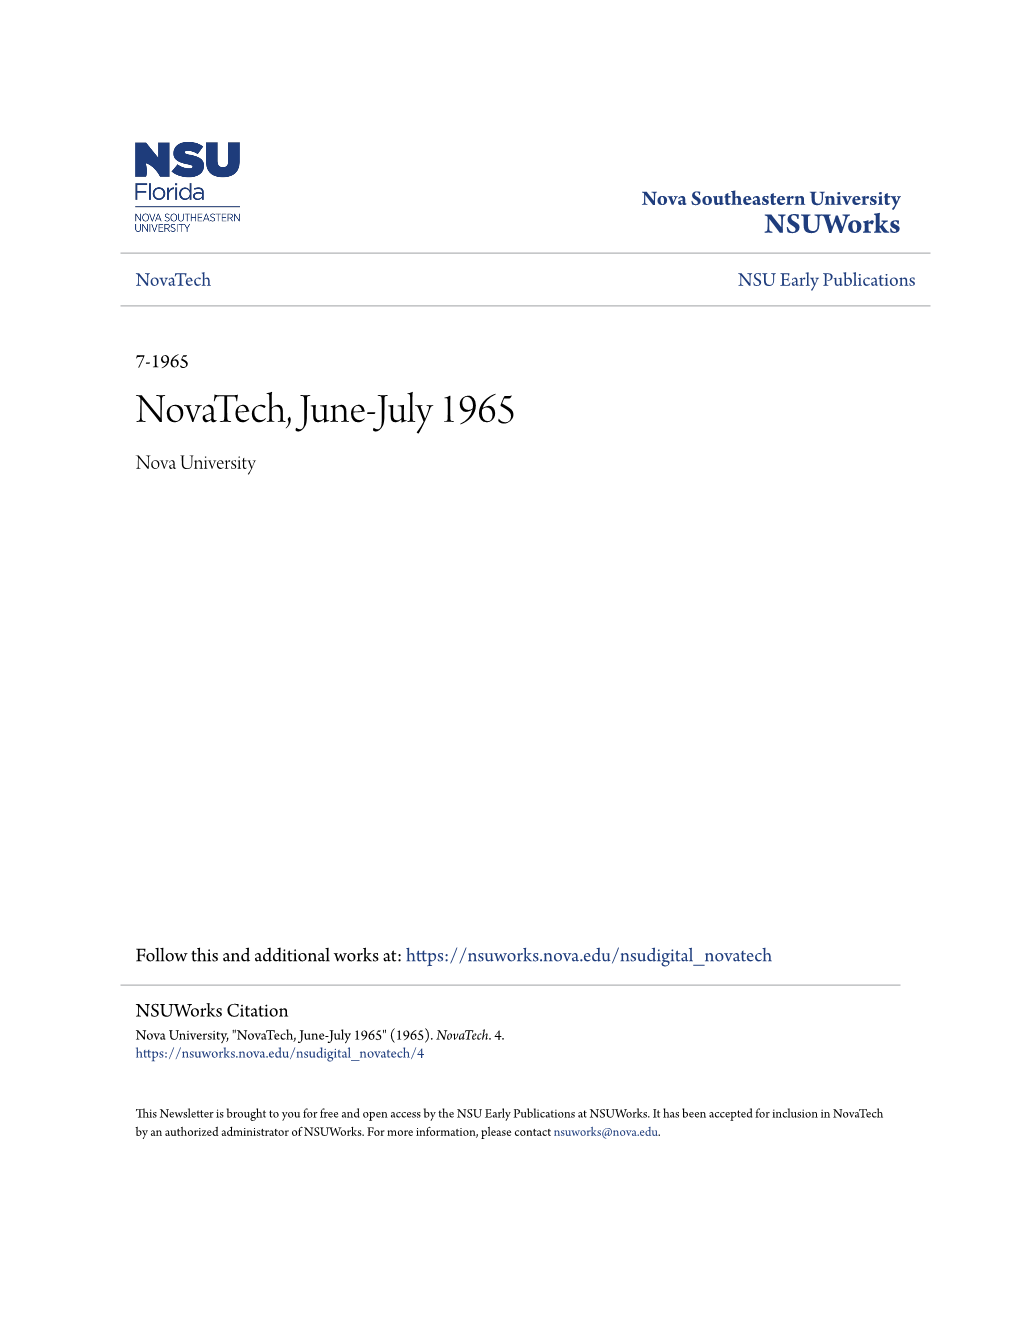 Novatech, June-July 1965 Nova University